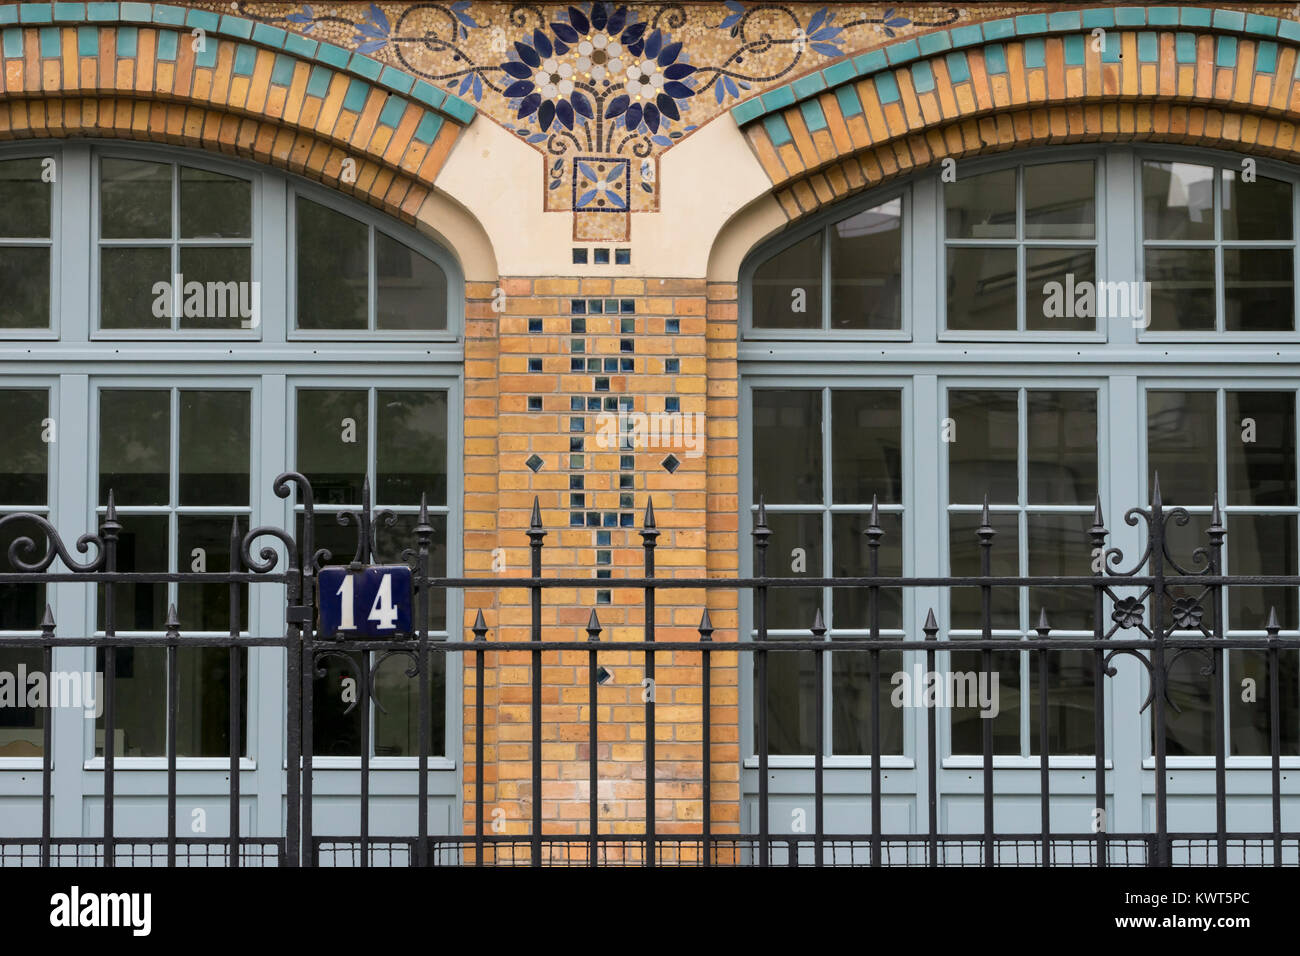 France, Paris, crèche, ou école maternelle dans le 14ème arrondissement Banque D'Images